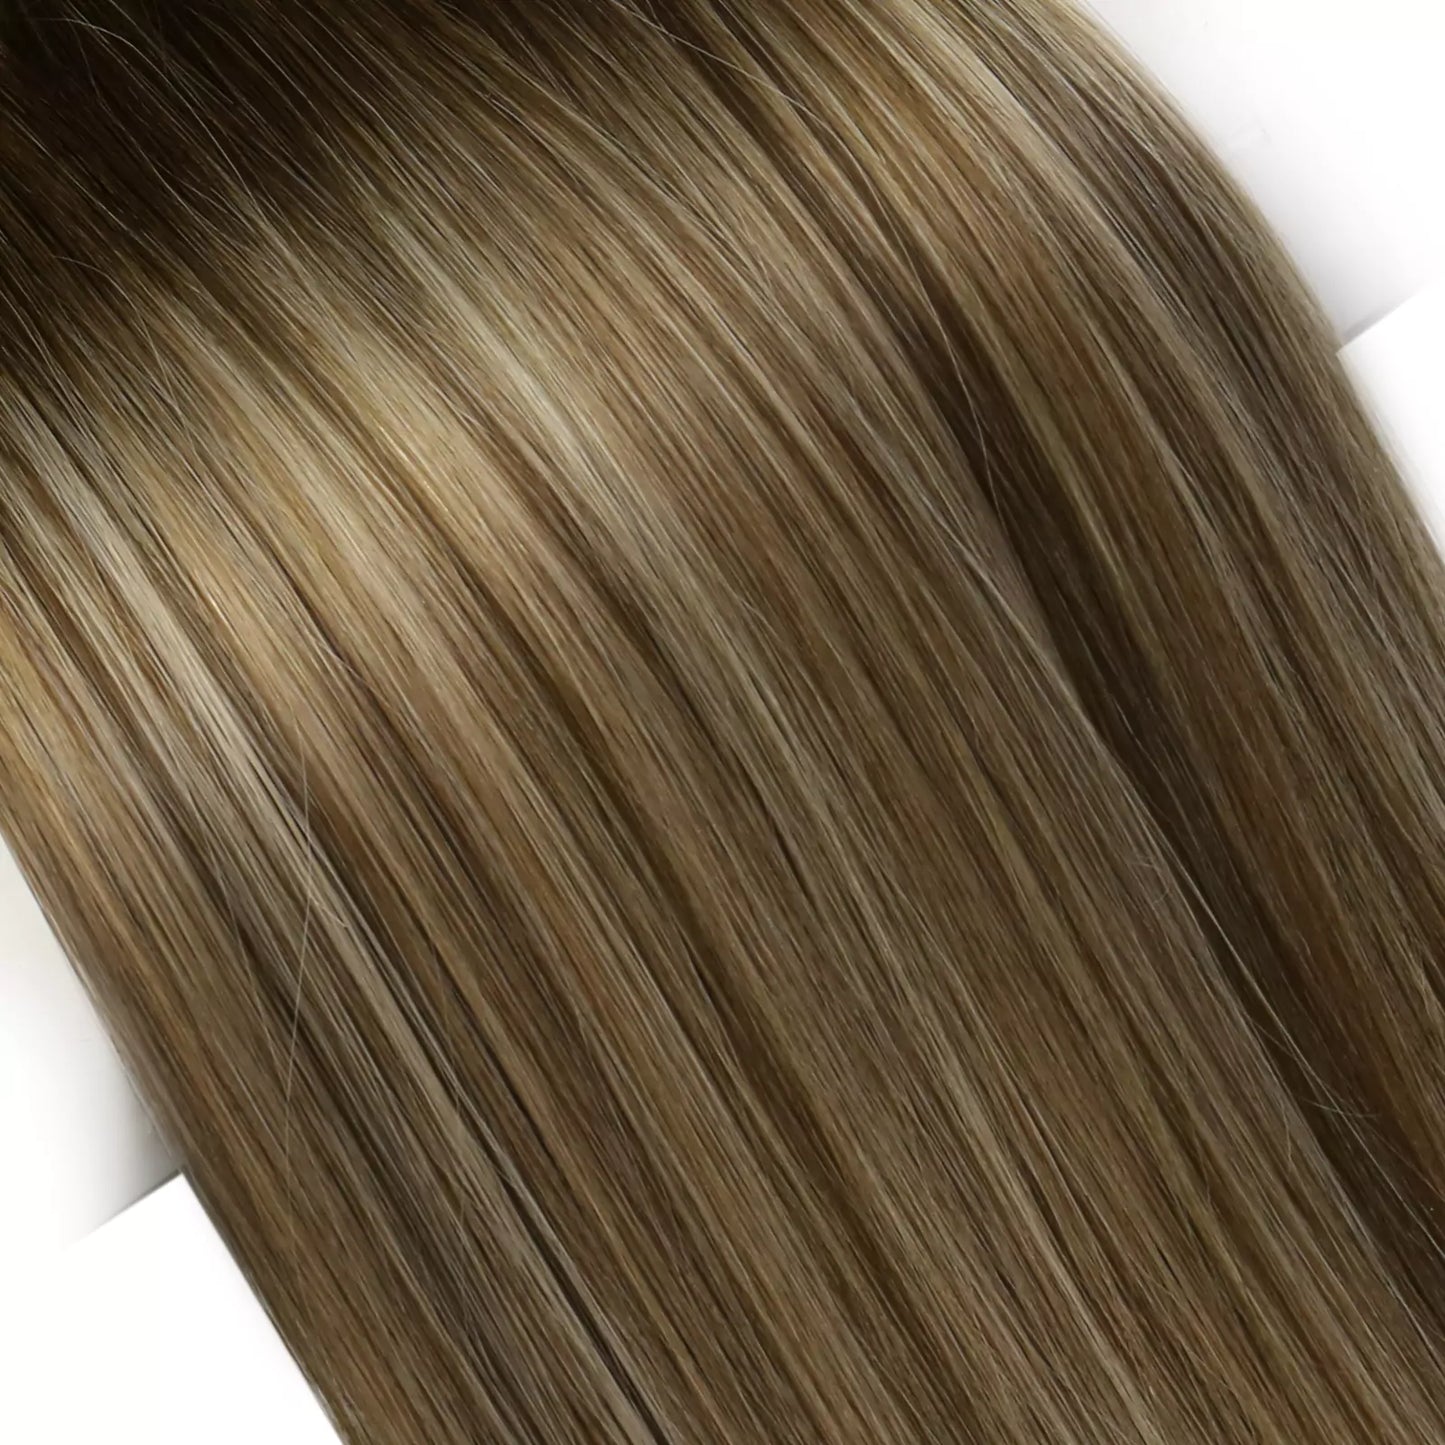 Genius Weft Extensions Sew in Weave Hair Balayage Brown Blonde